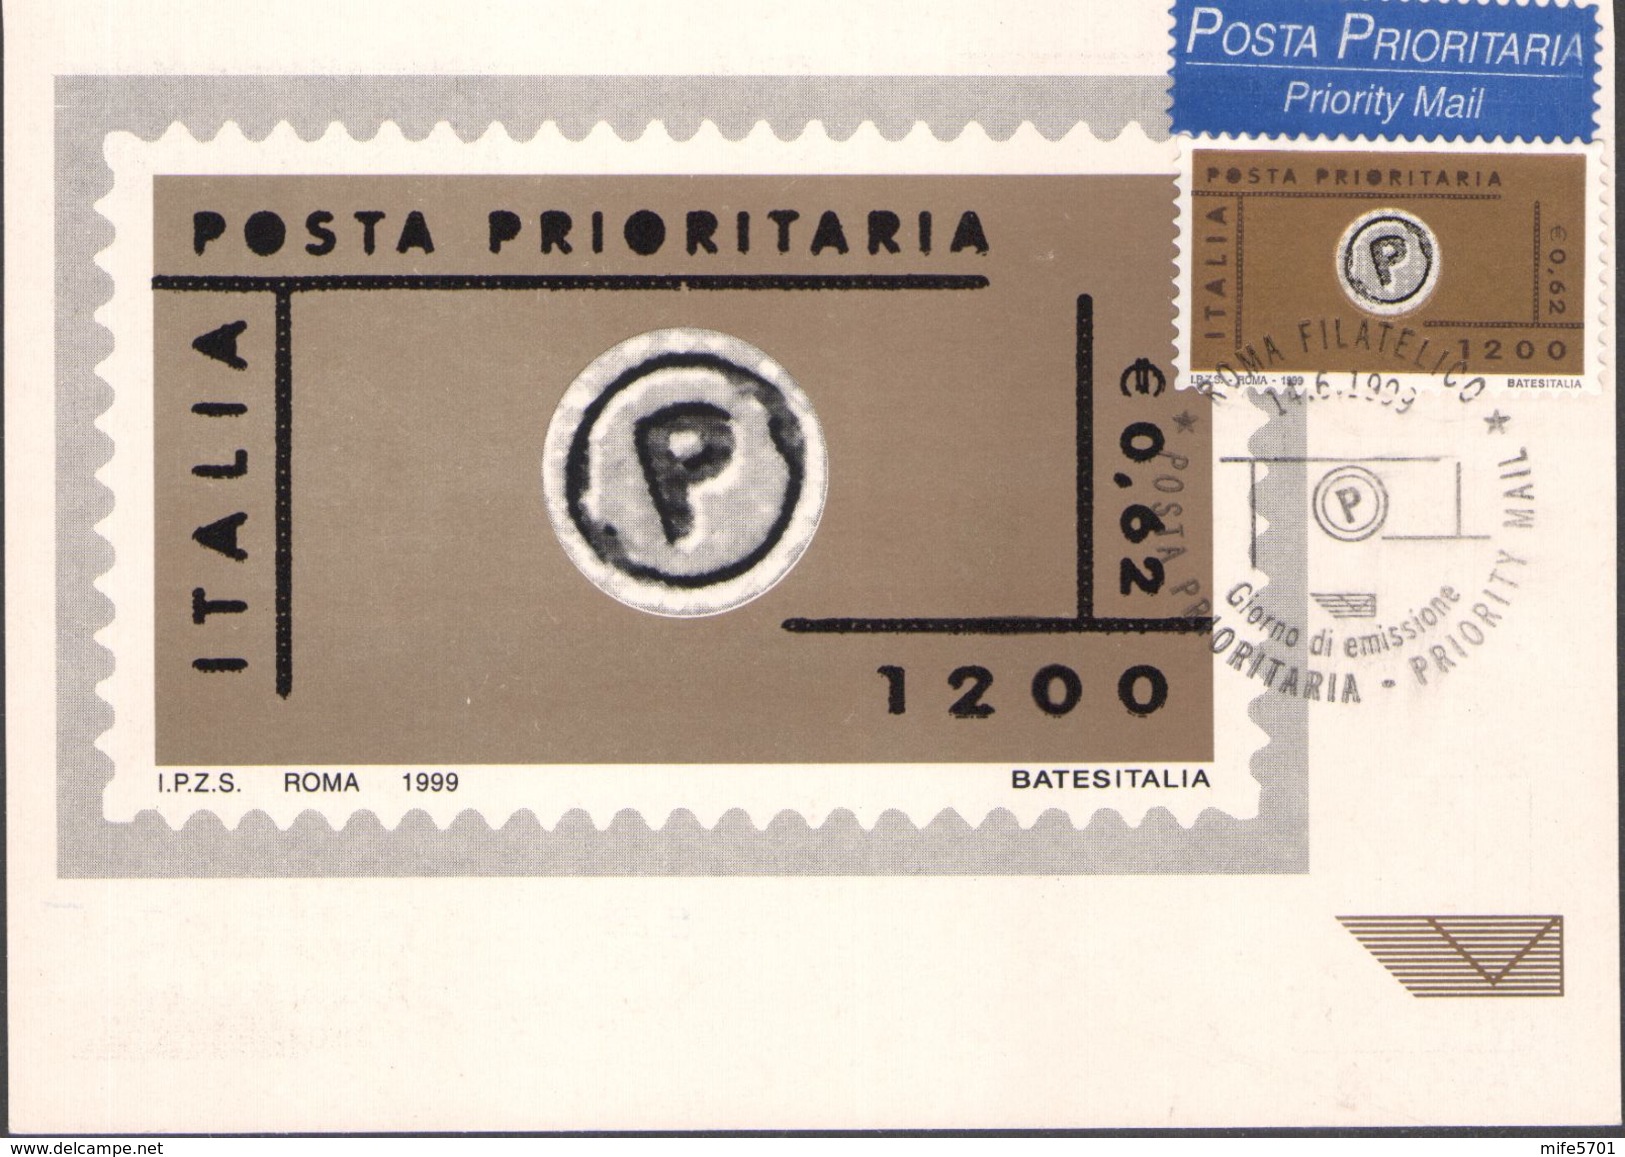 MAXCARD - CARTOLINA POSTA PRIORITARIA FRANCOBOLLO DA L. 1200 EURO 0,62 - 14.6.1999 - CATALOGO SASSONE: 2419 - FDC - Cartas Máxima